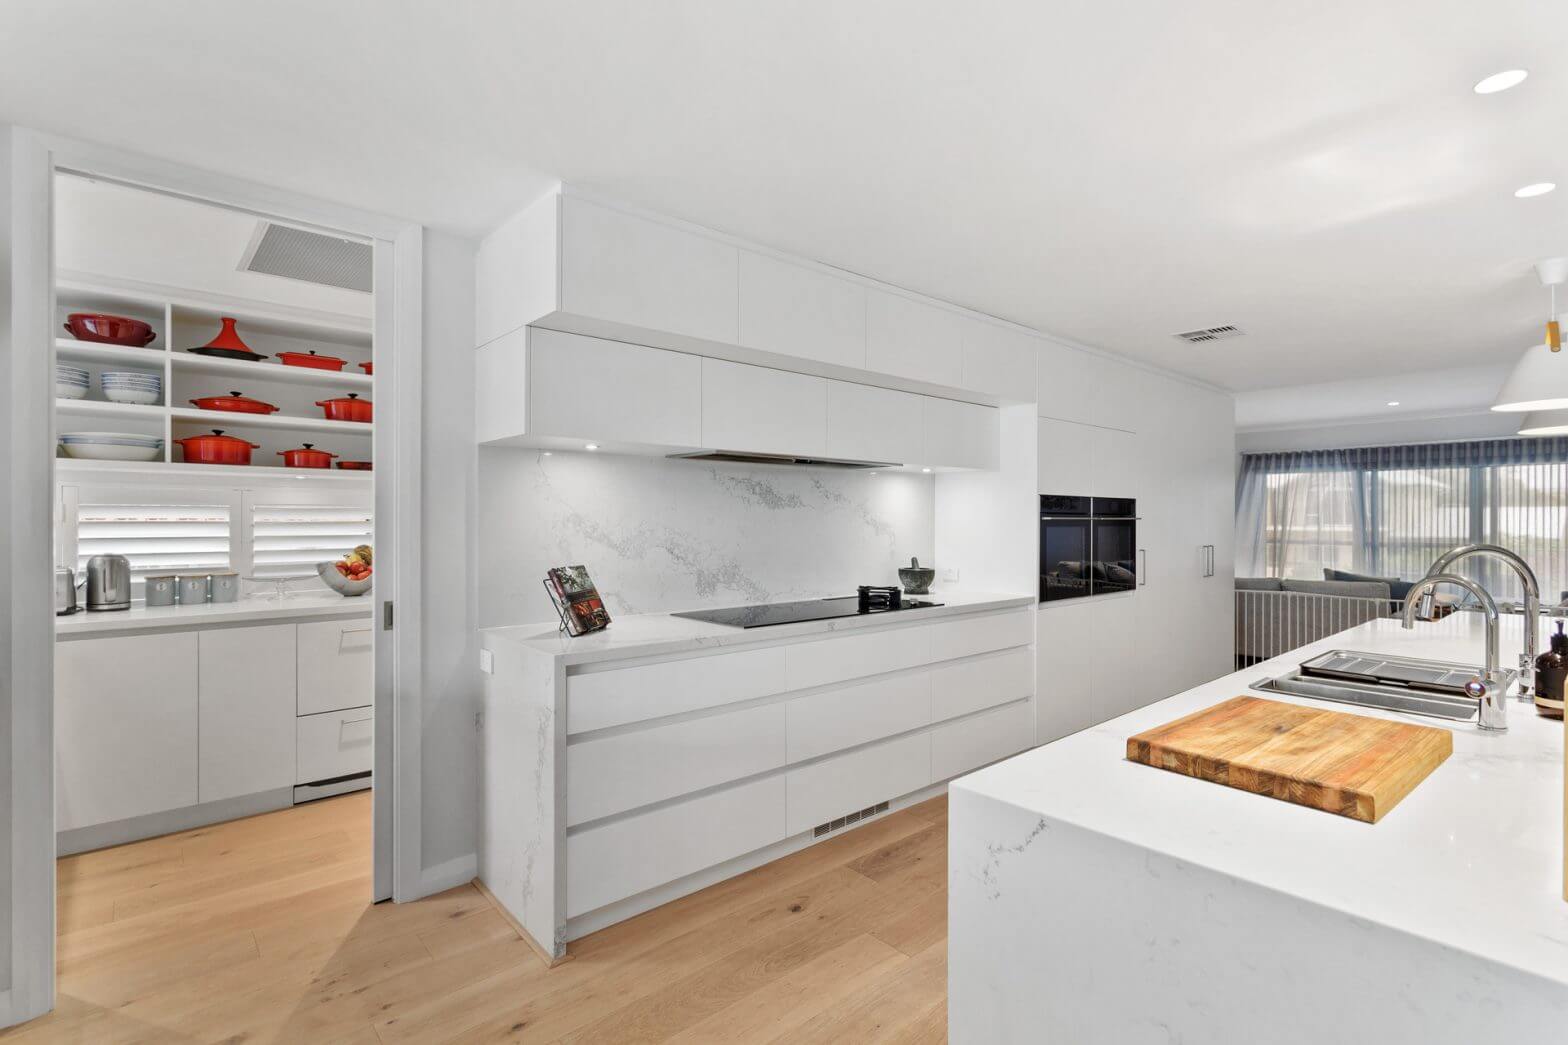 Kitchen Renovation Ideas – The White Edition